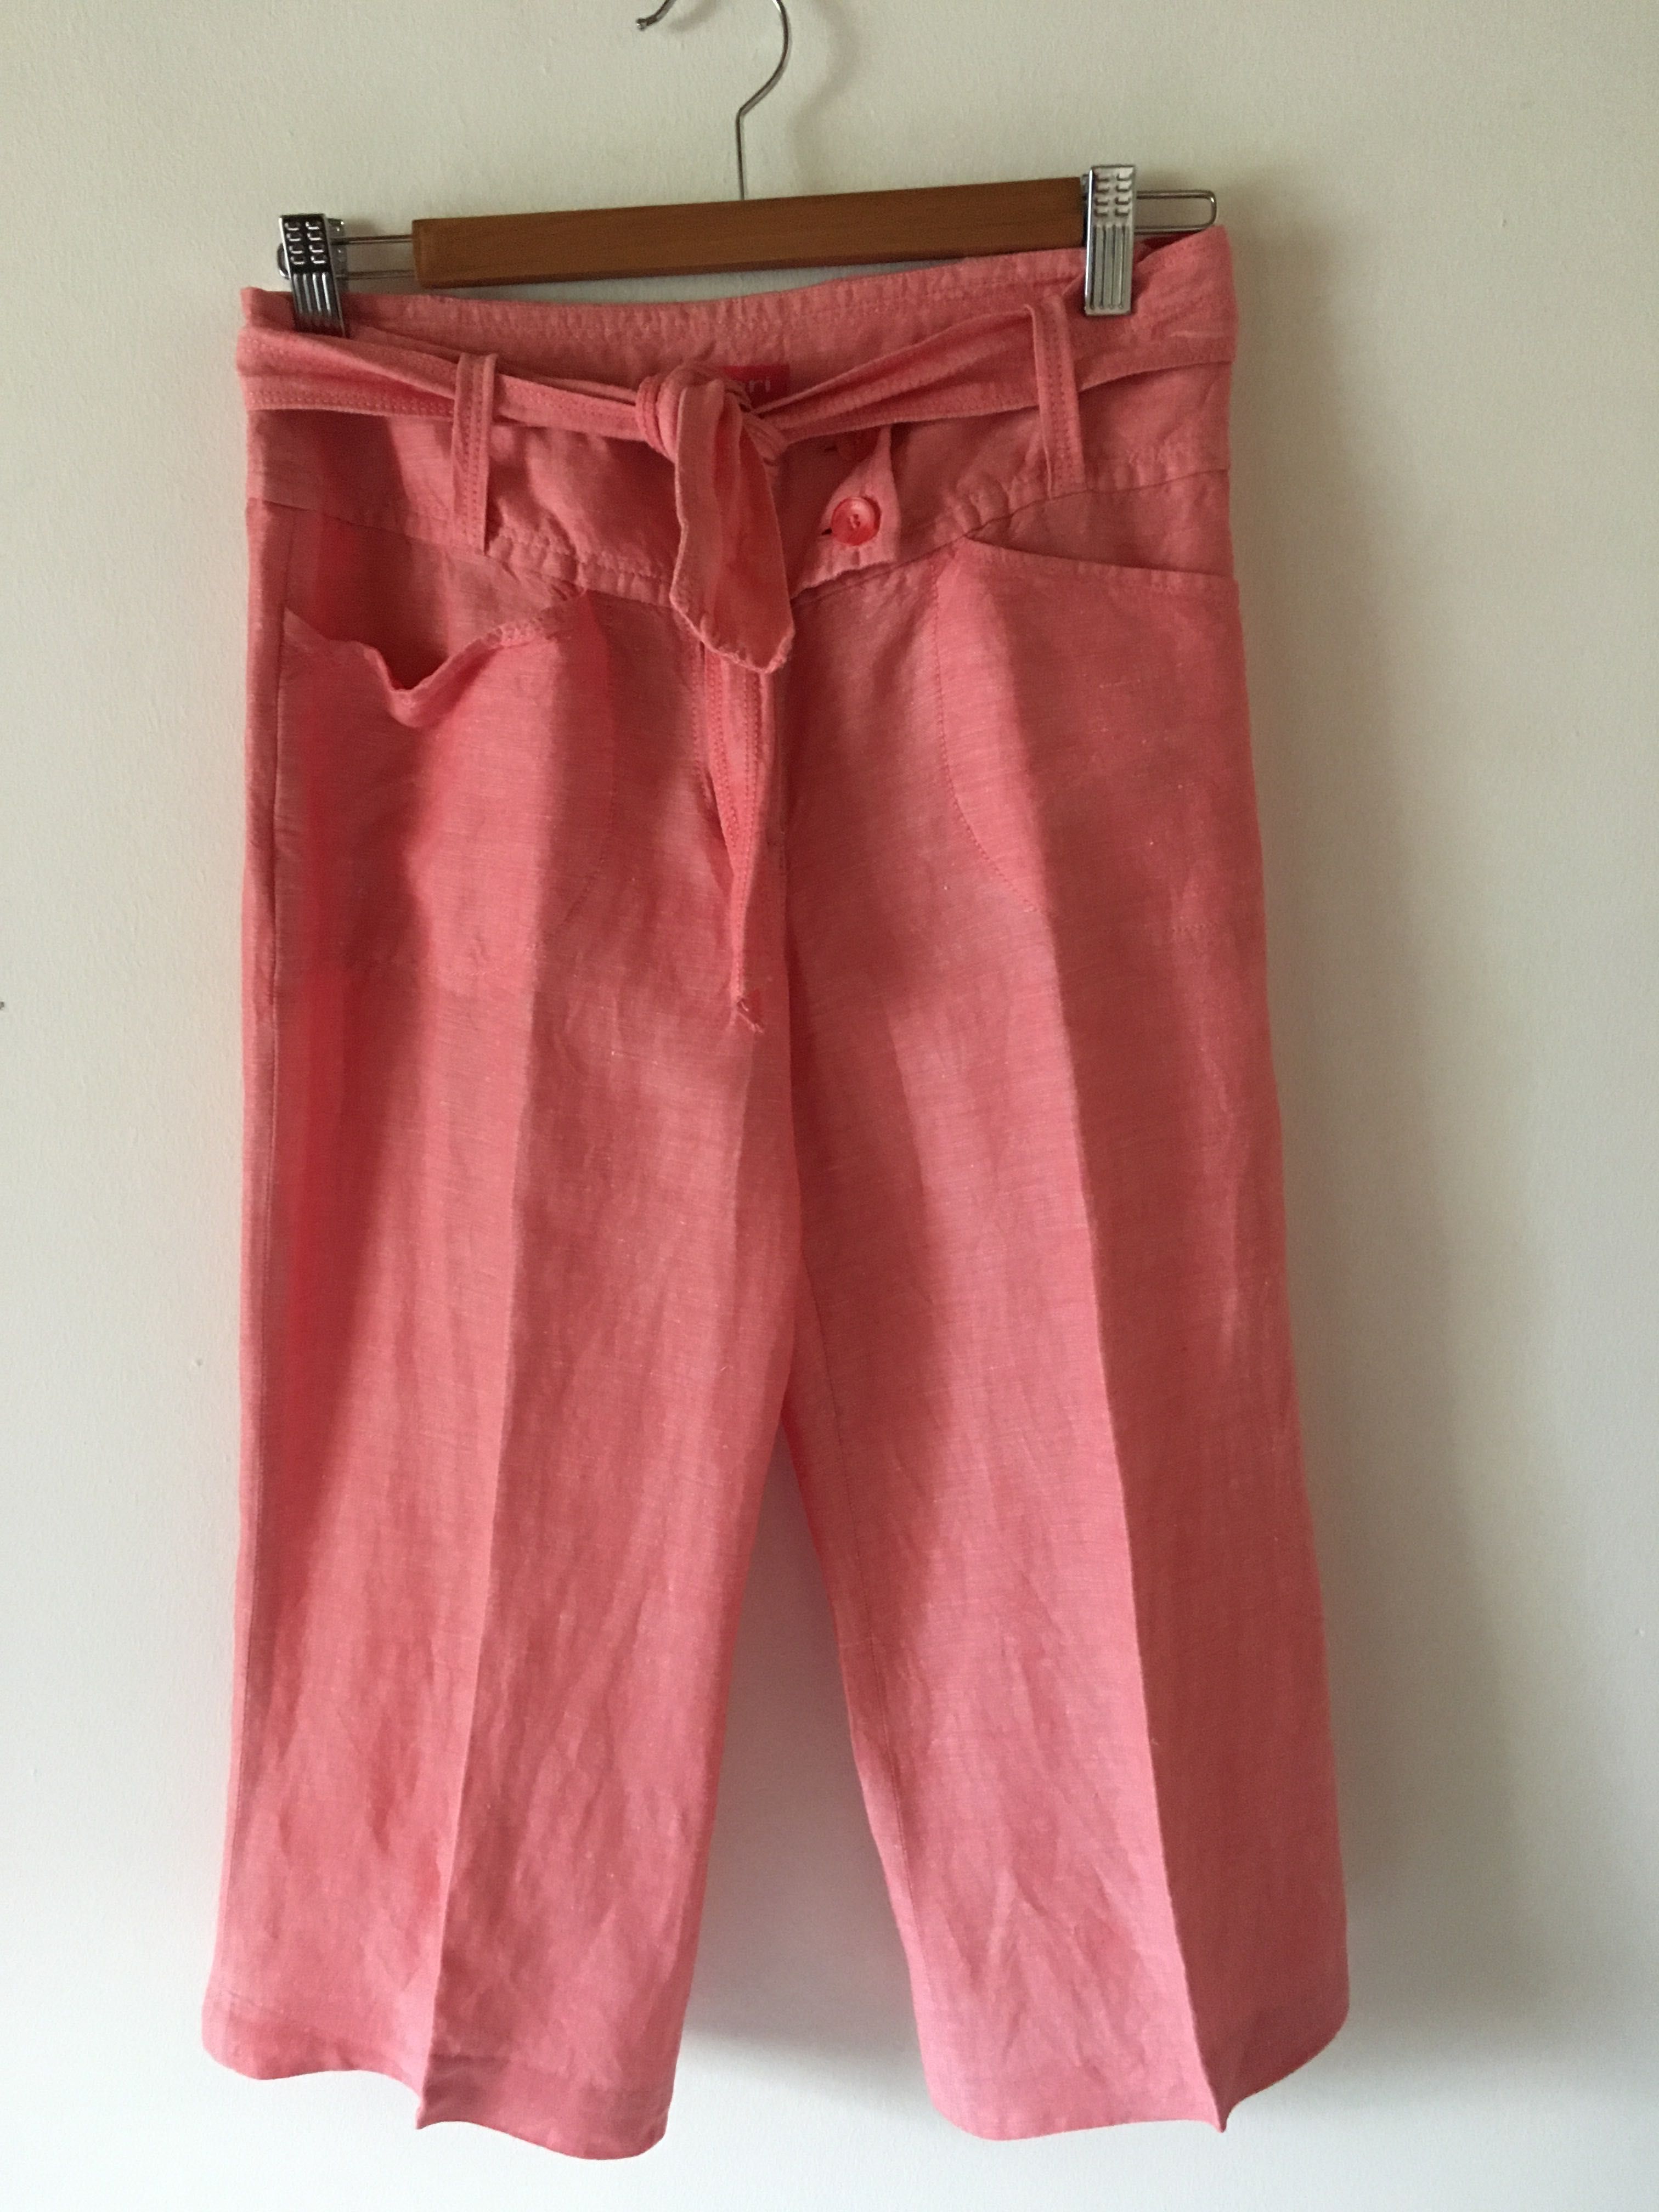 Lniany różowy komplet spodnie + żakiet APRIORI  36 S